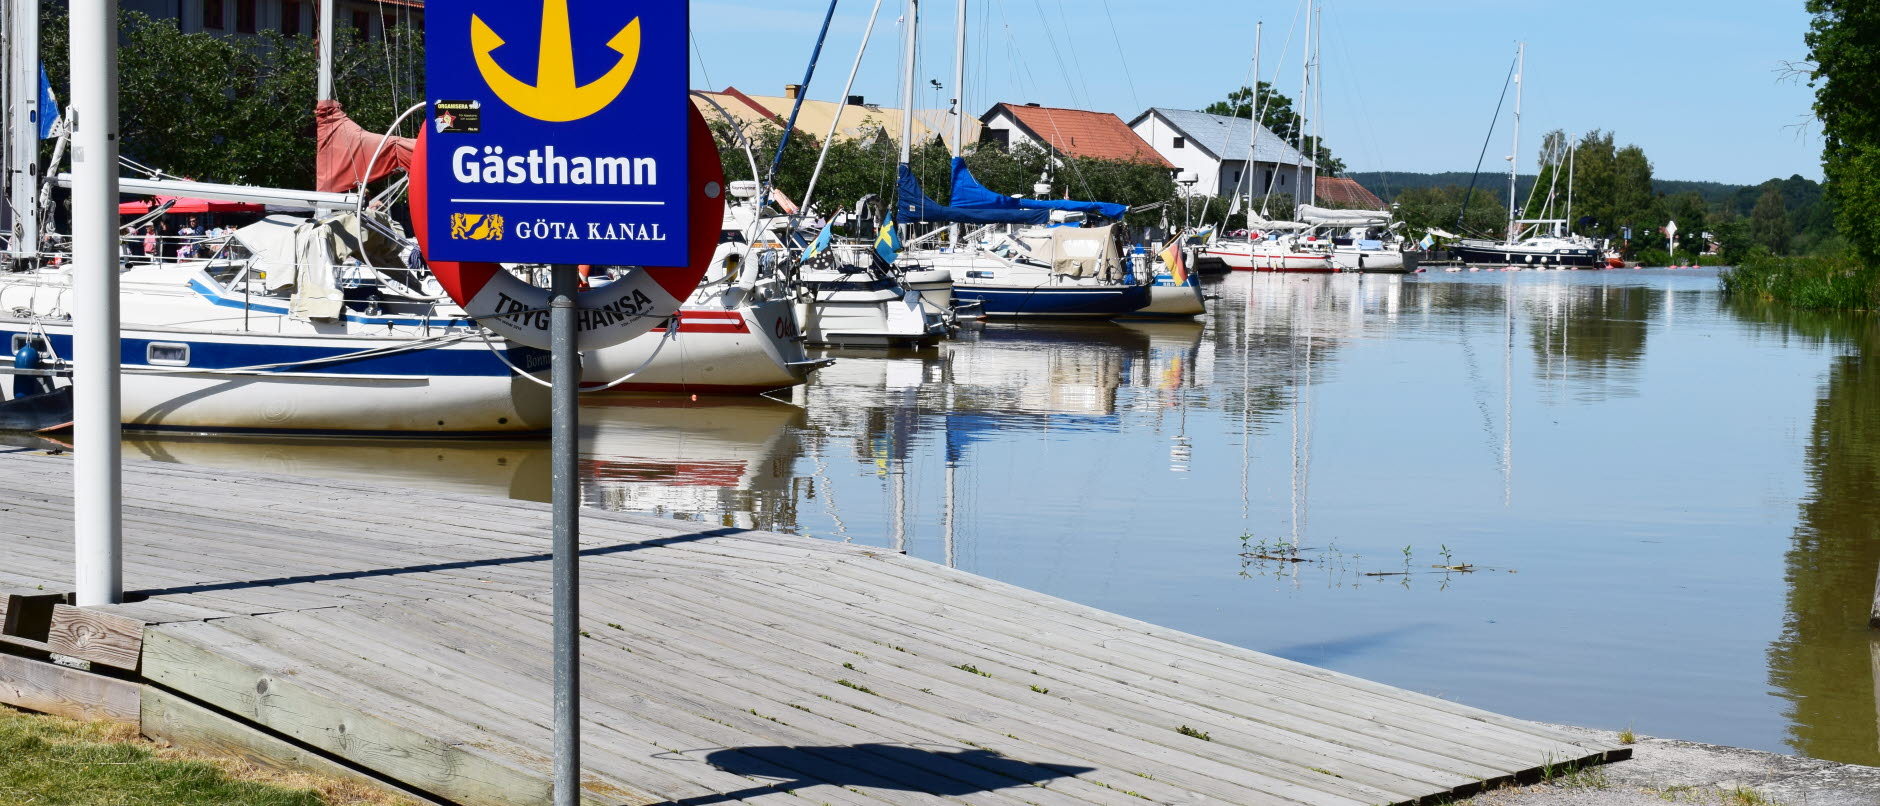 Bild visar en *Gästhamnsskylt framför en brygga med båtar i Göta kanalhamnen i Söderköping.